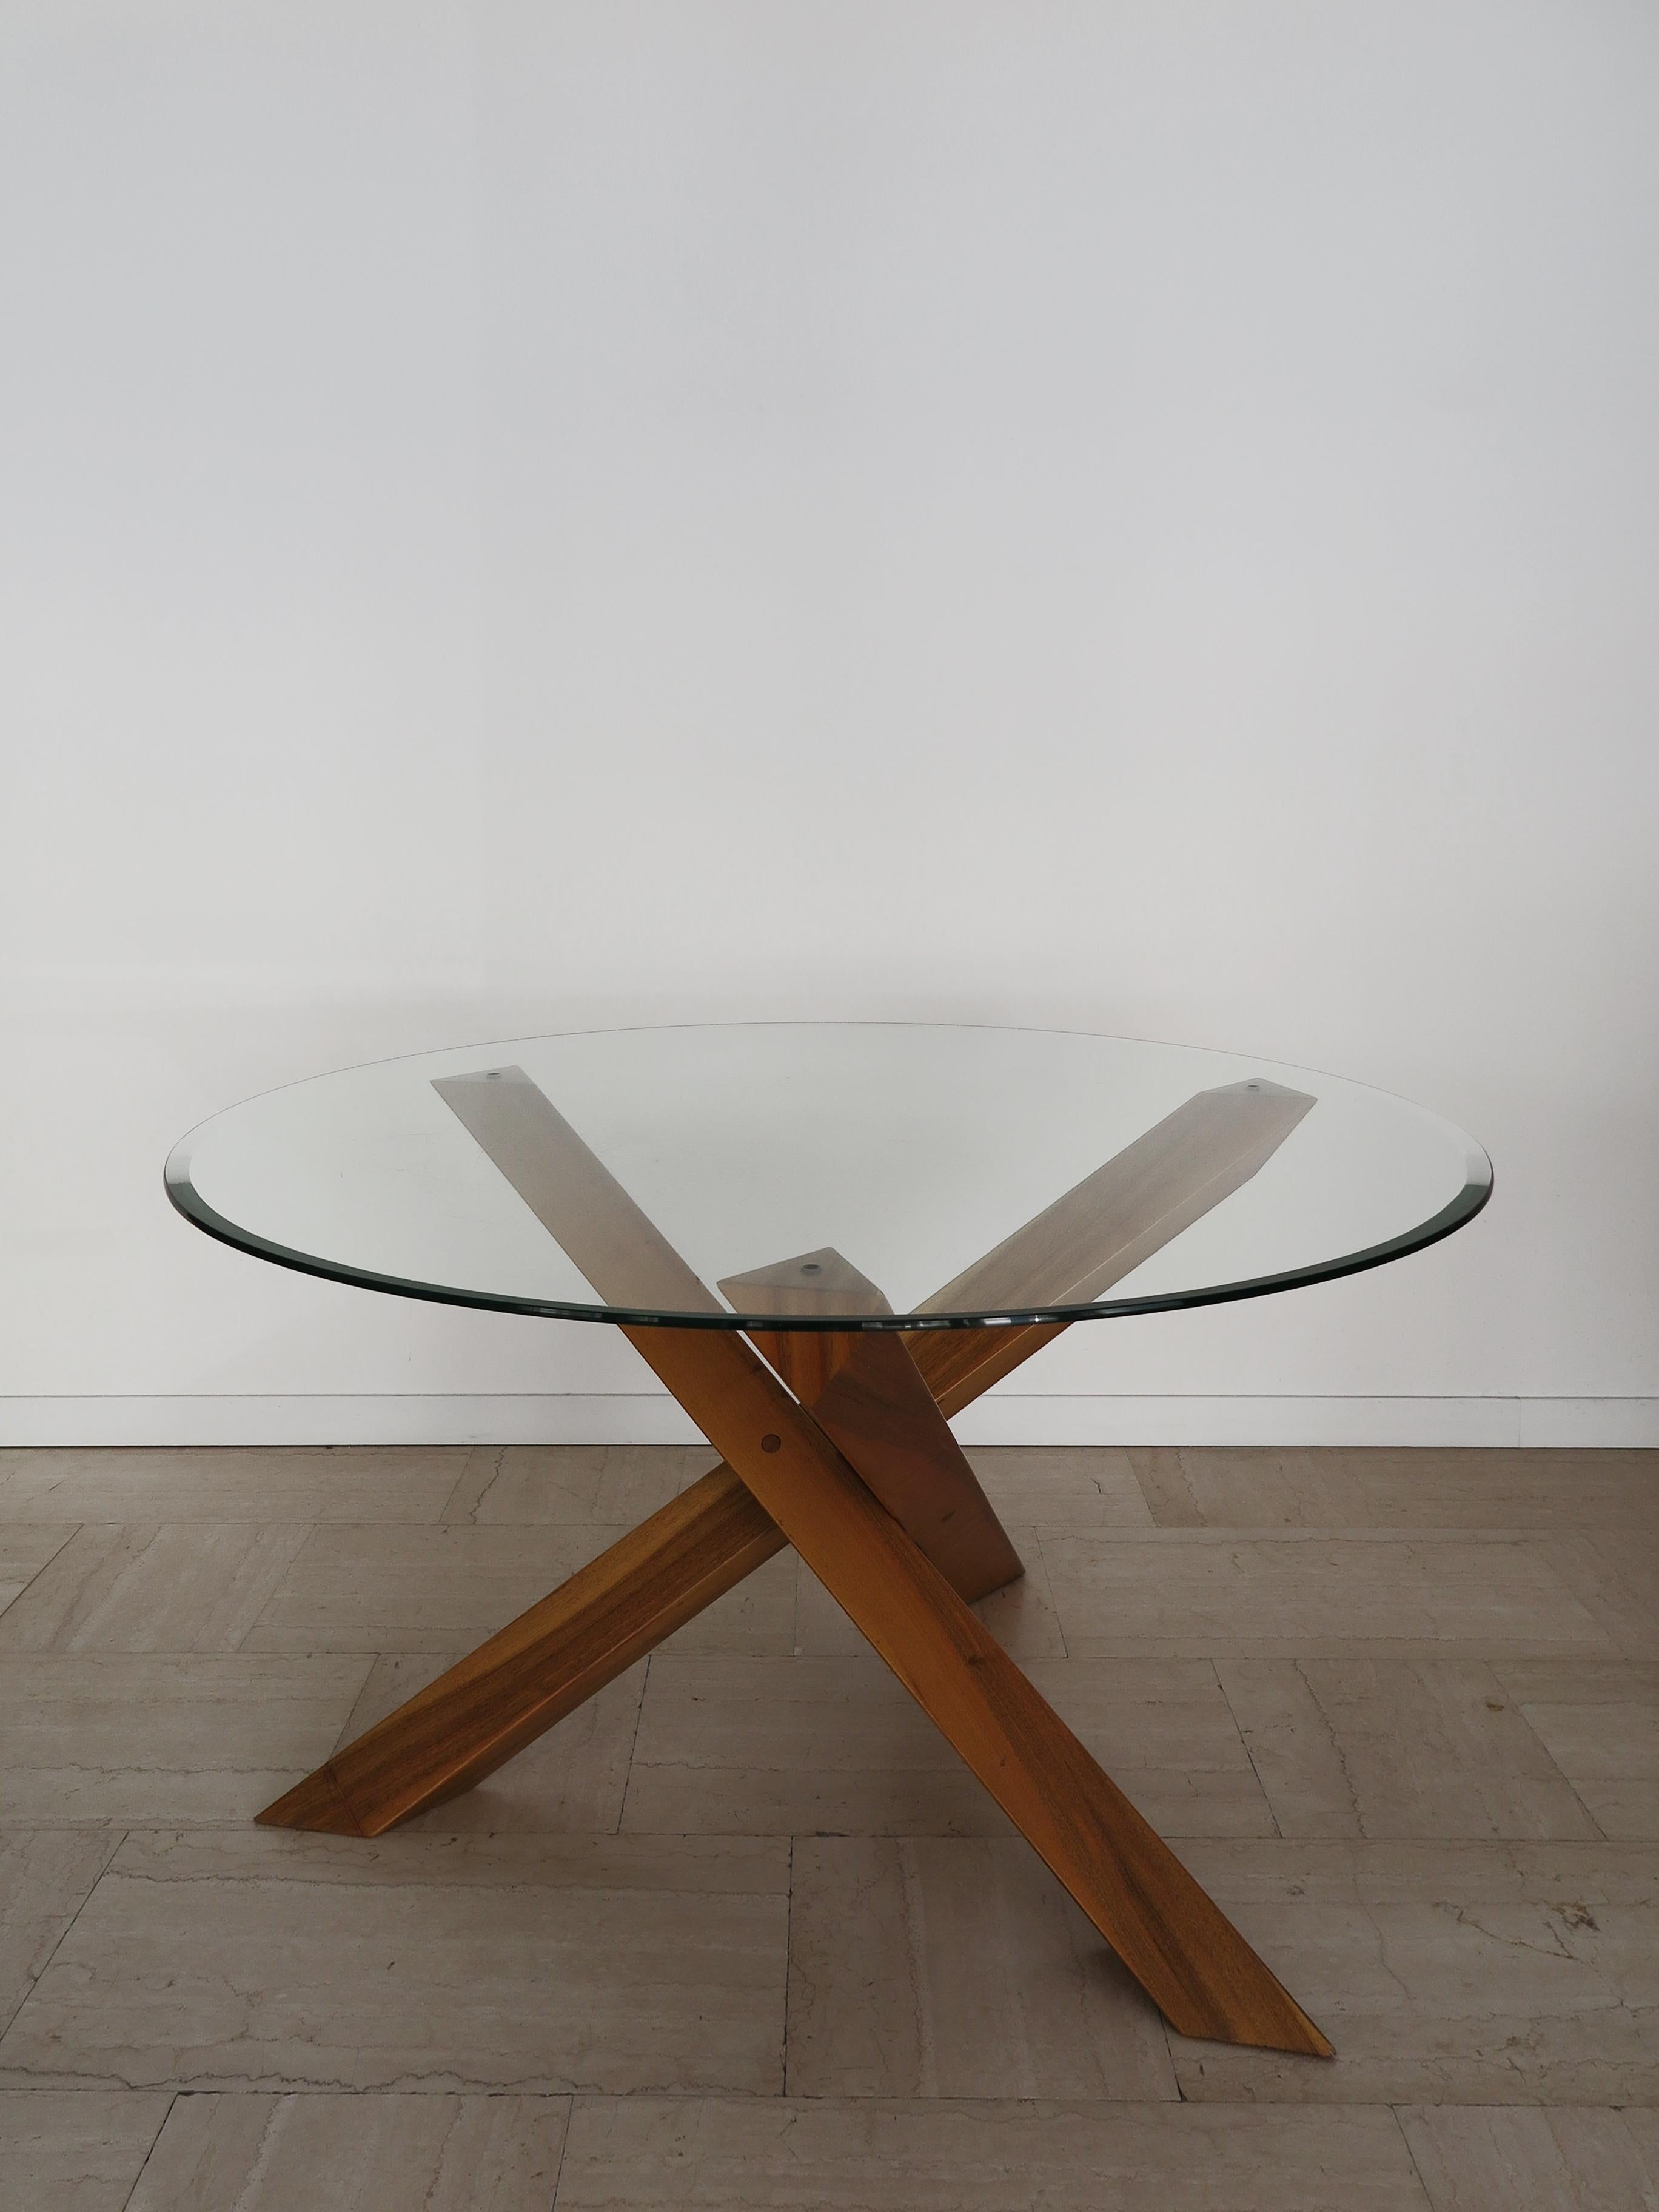 Italienischer Esstisch im Stil von Mario Bellini für Cassina mit Glasplatte mit abgeschrägter Kante, die auf einem skulpturalen Holzfuß ruht, hergestellt in Italien 1980er Jahre

Bitte beachten Sie, dass der Tisch original aus der Zeit stammt und